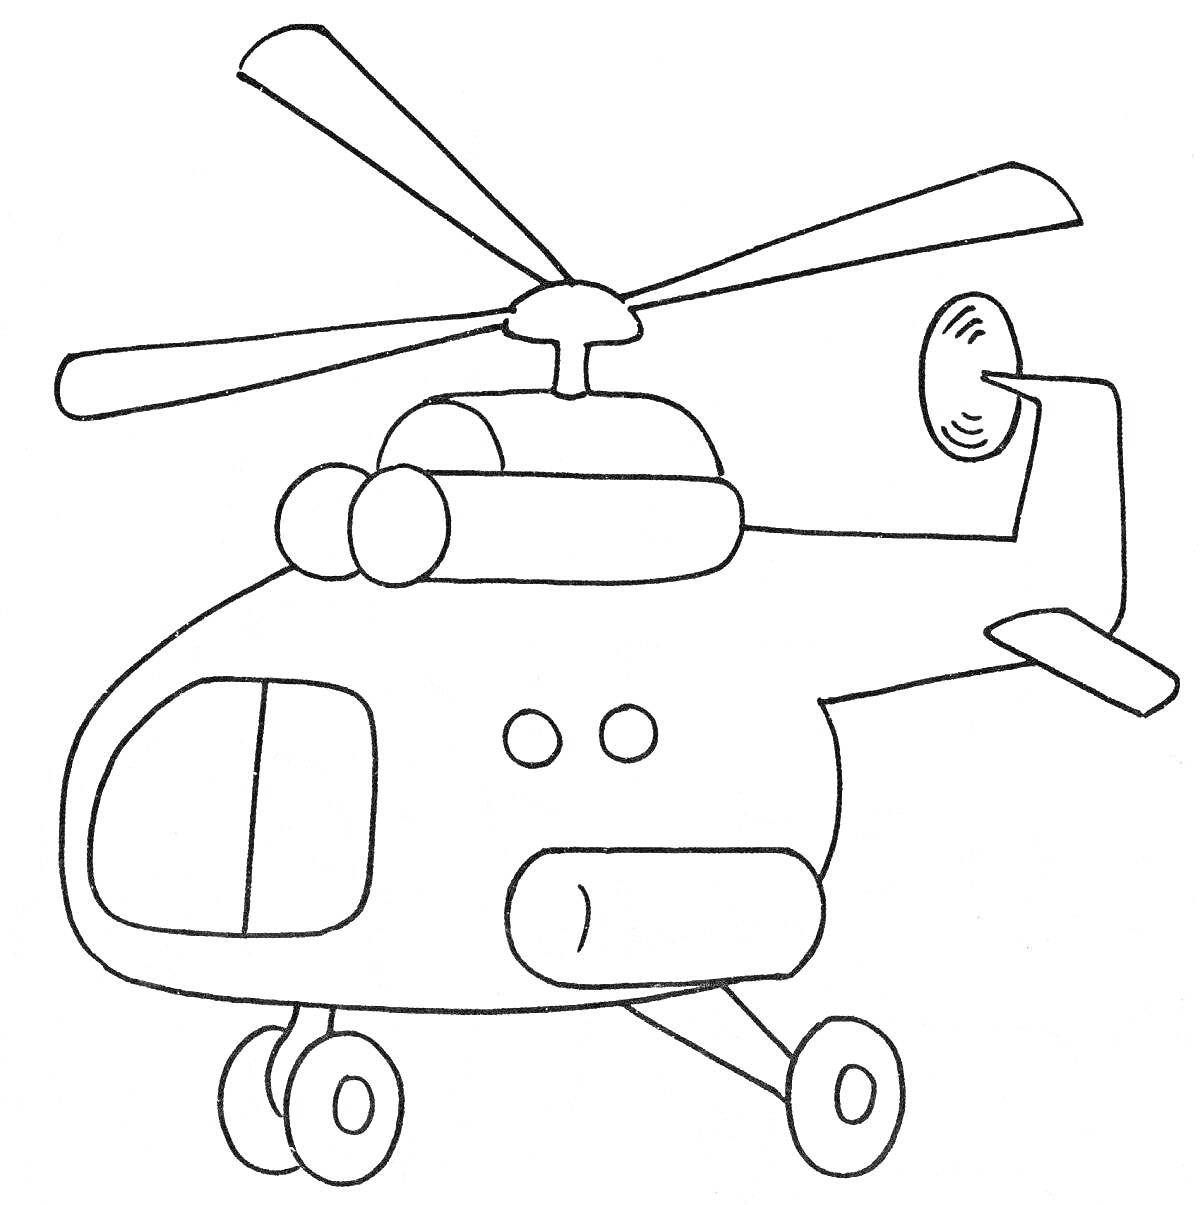 Раскраска раскраска детского вертолета с окнами и колесами